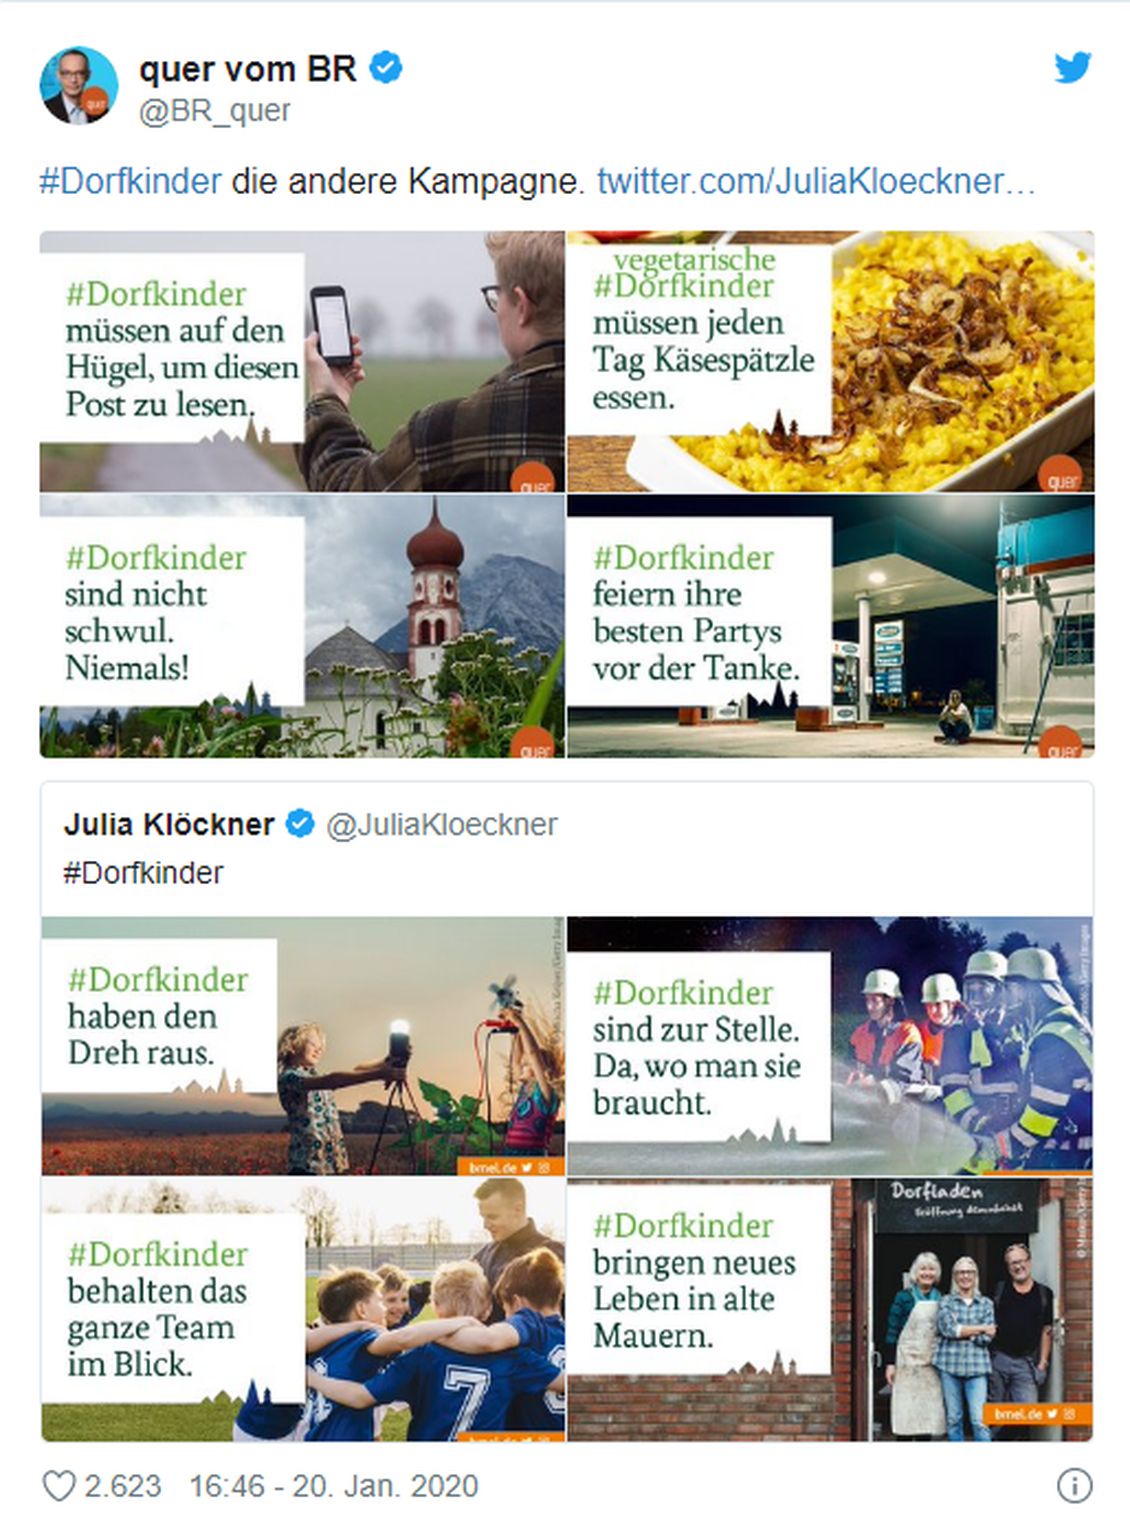 Twitterperlen.de hat einige Repliken auf die #Dorfkinder-Kampagne auf Twitter gesammelt. (Bild: Twitterperlen)